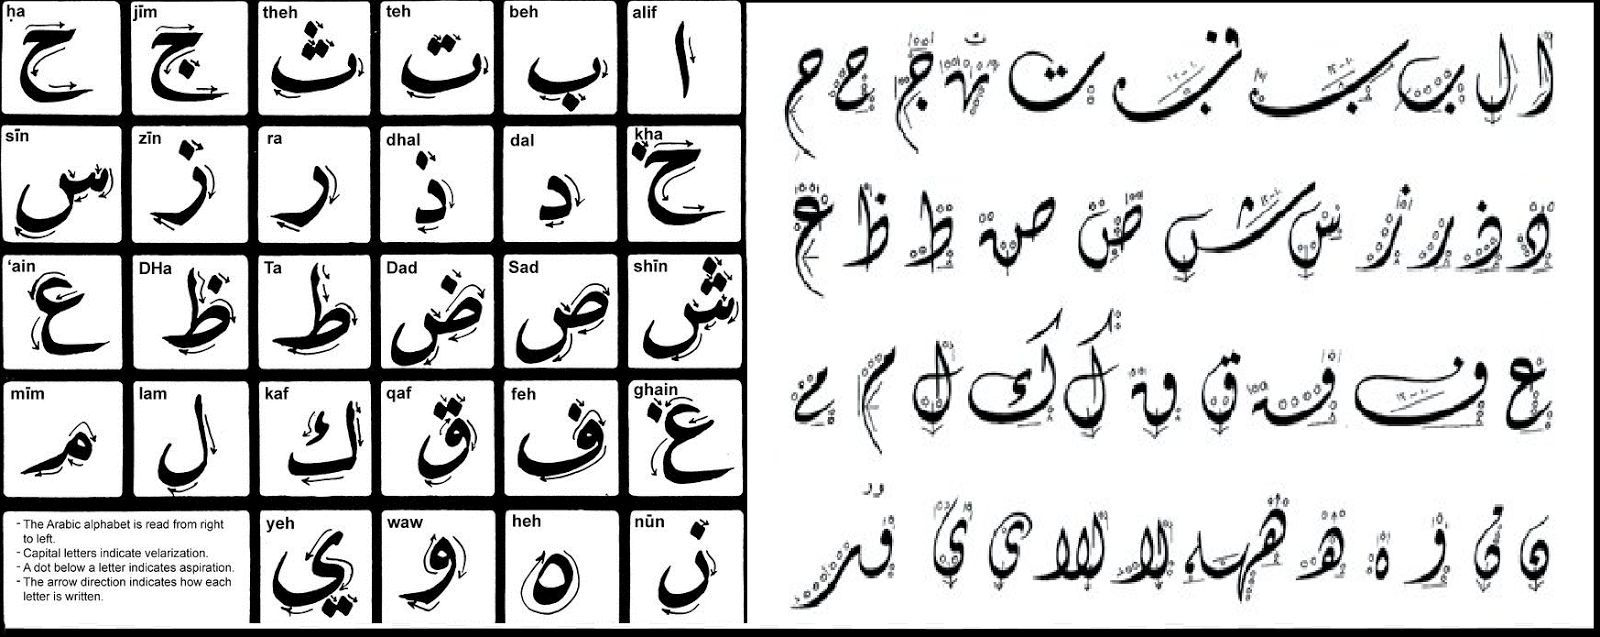 Arabic Calligraphy Alphabet Complete